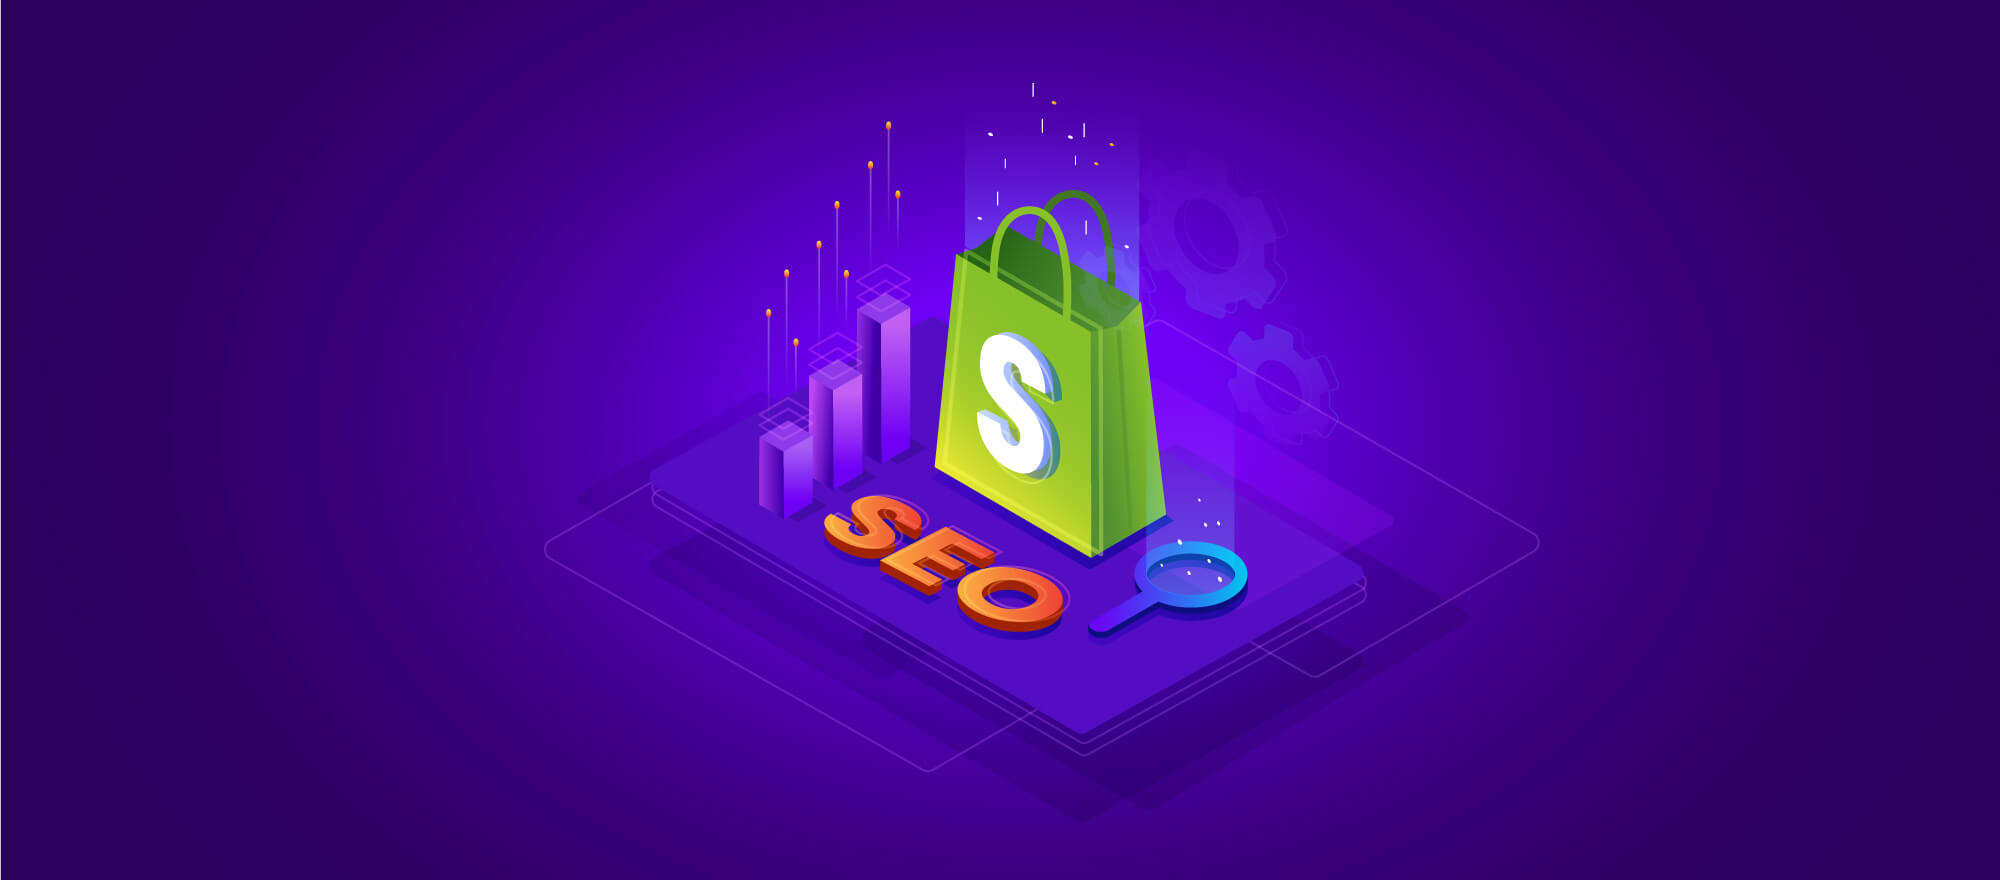 Shopify SEO İpuçları: Daha Fazla Trafik ve Satış İçin Stratejiler